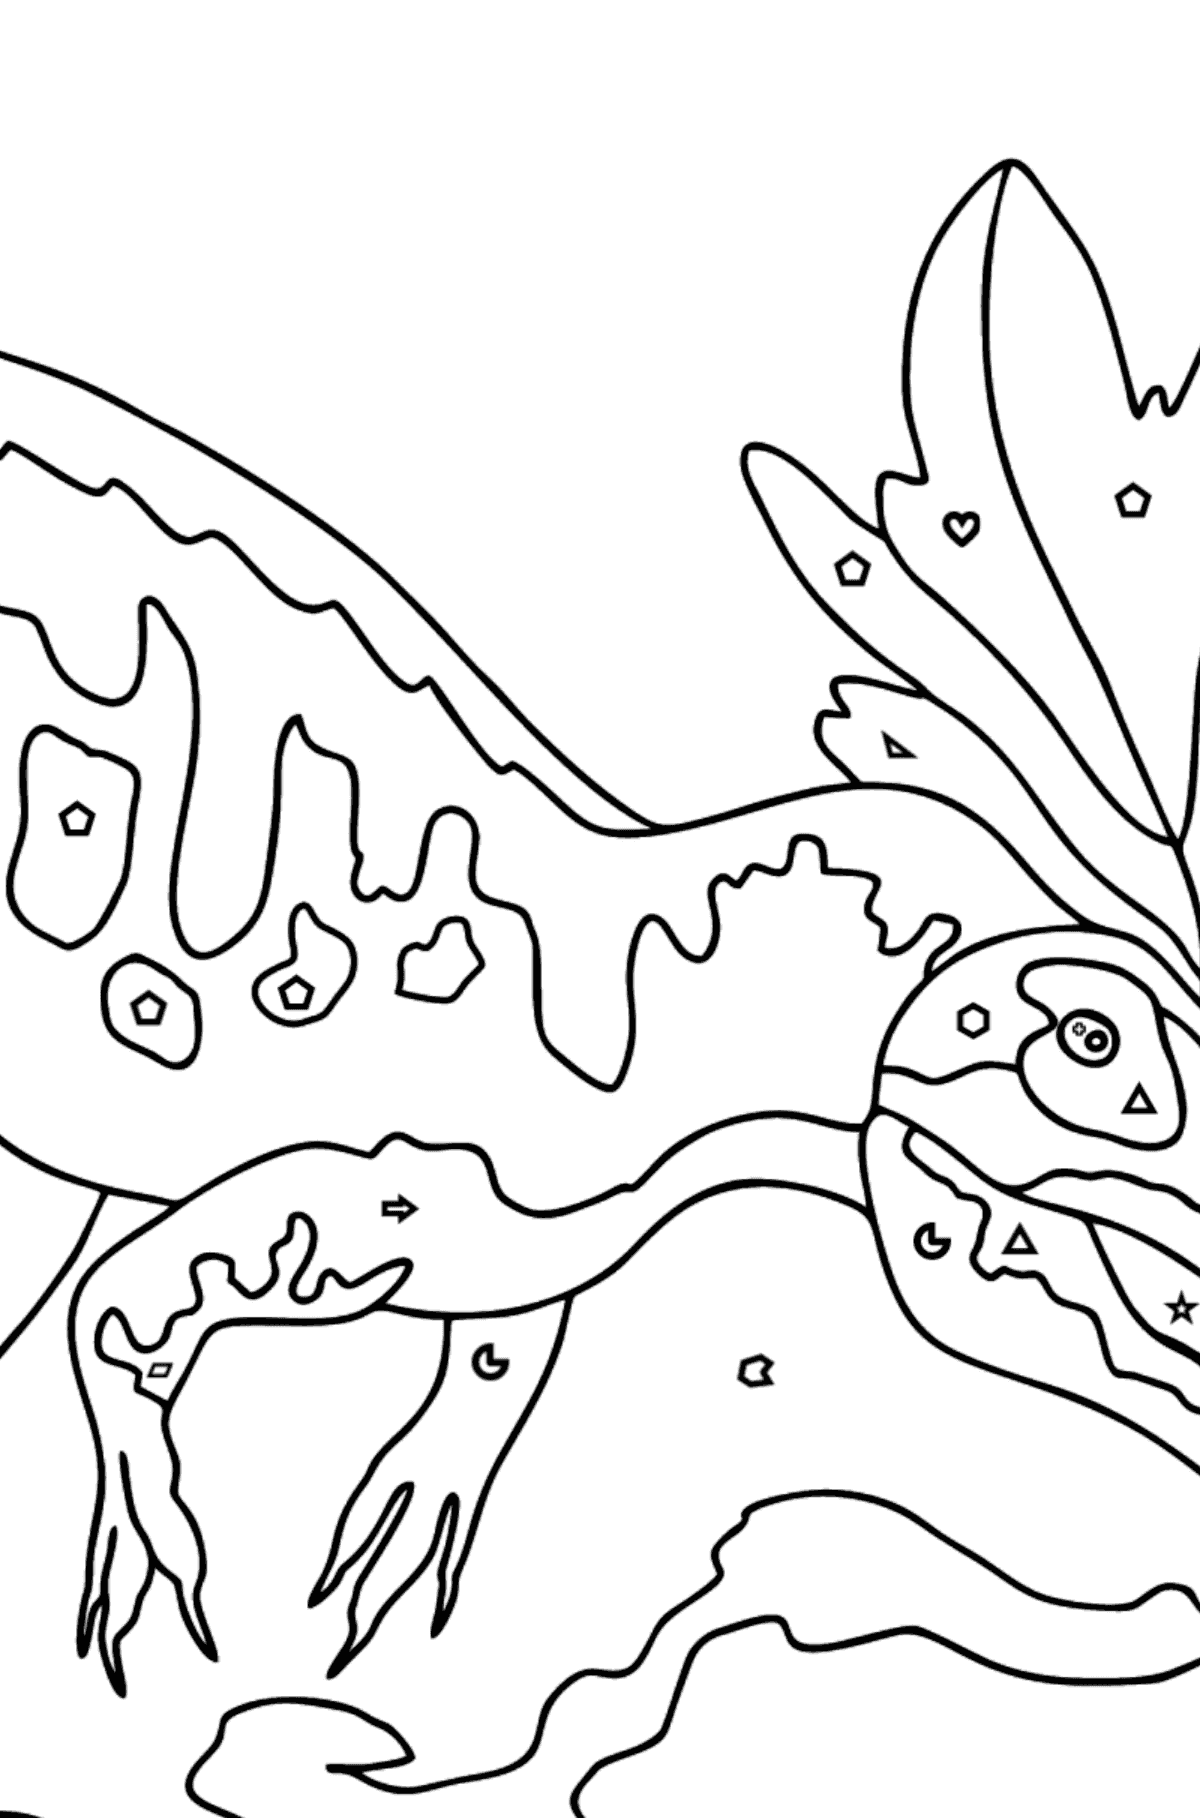 Målarbild allosaurus (svår) - Färgläggning av geometriska former För barn